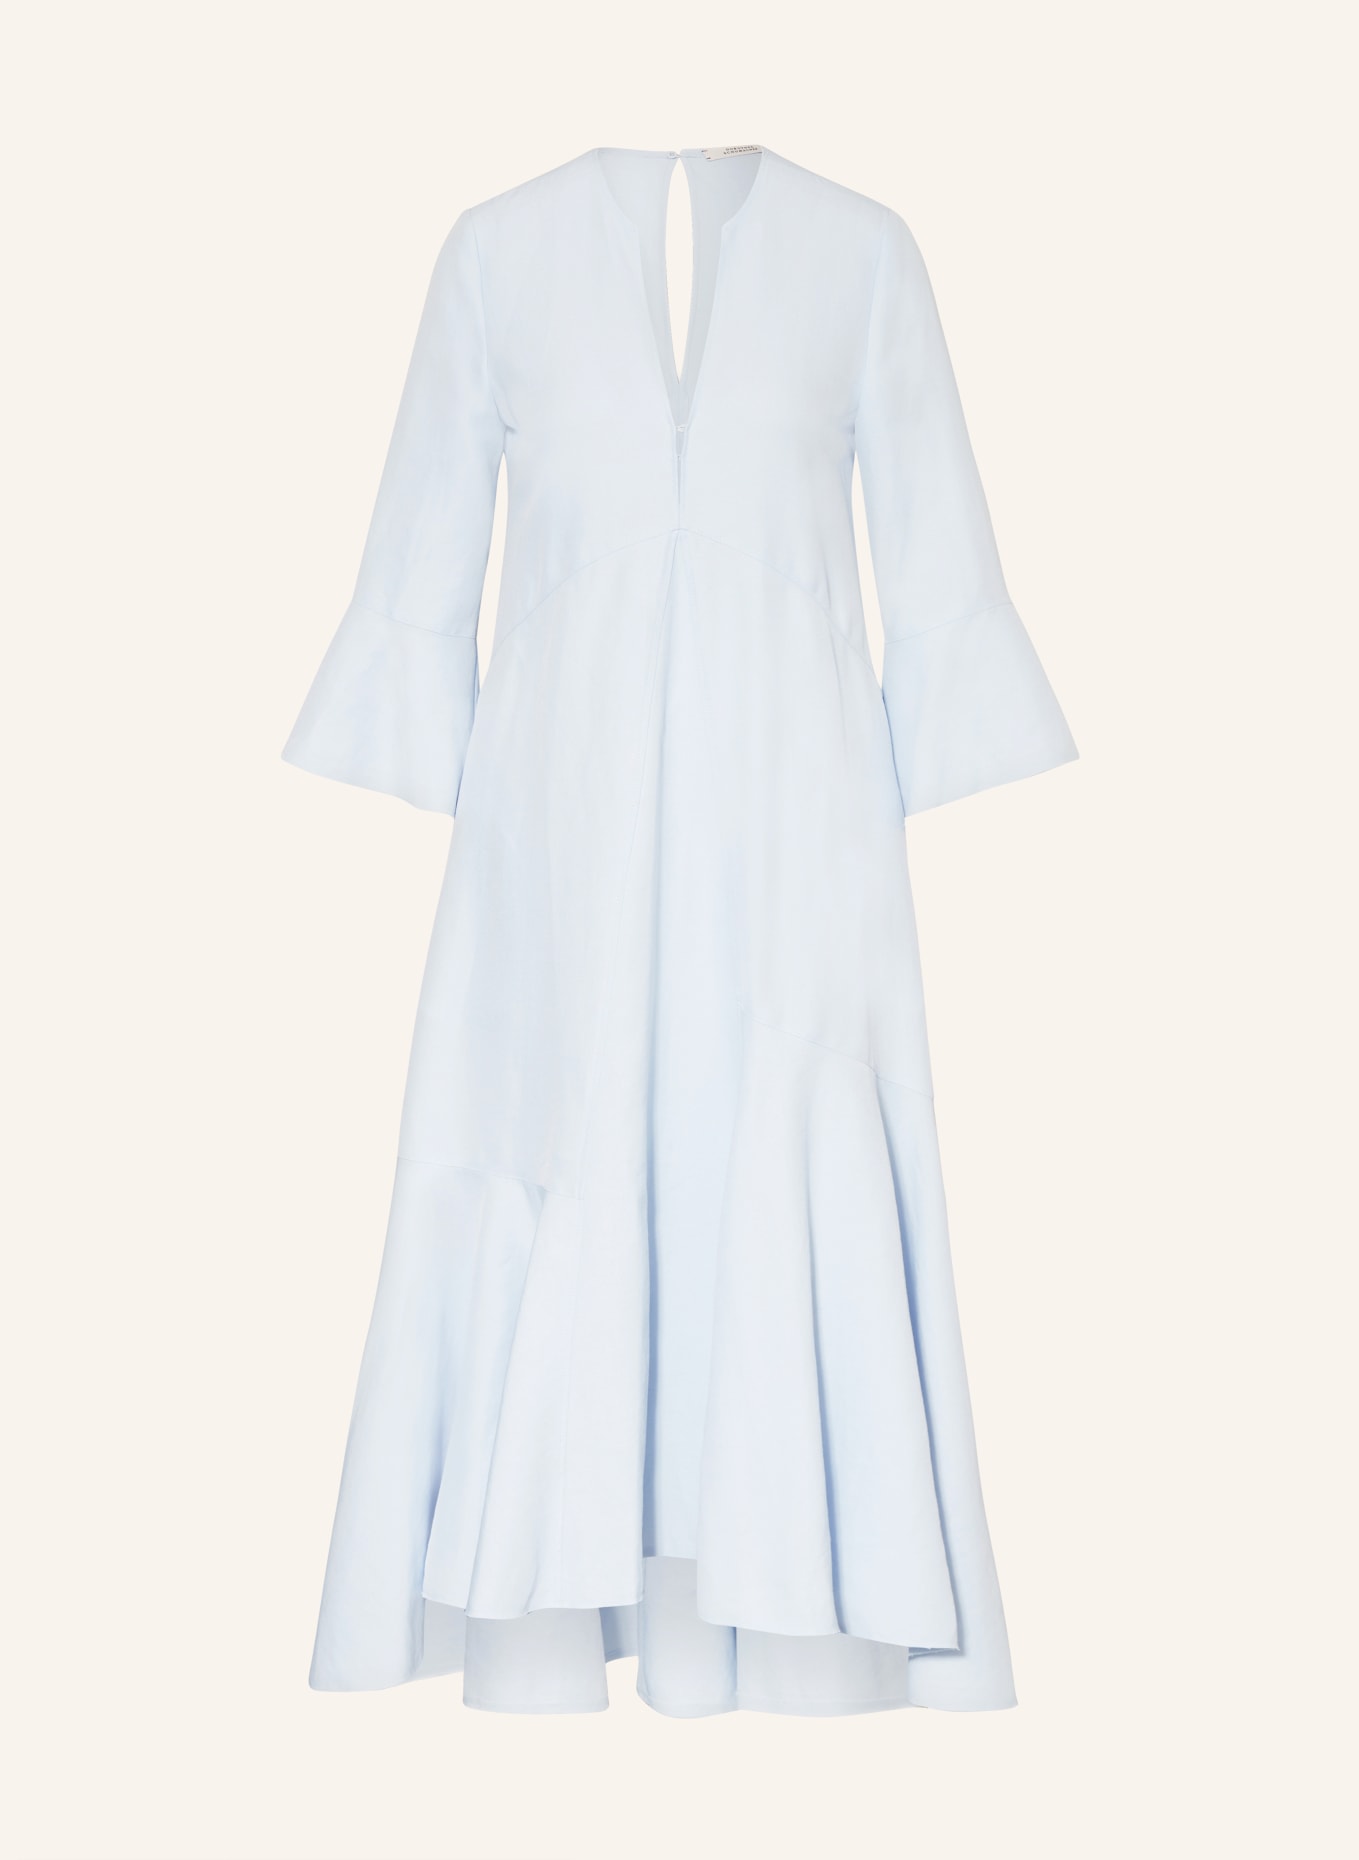 DOROTHEE SCHUMACHER Kleid mit 3/4-Arm und Leinen, Farbe: HELLBLAU (Bild 1)